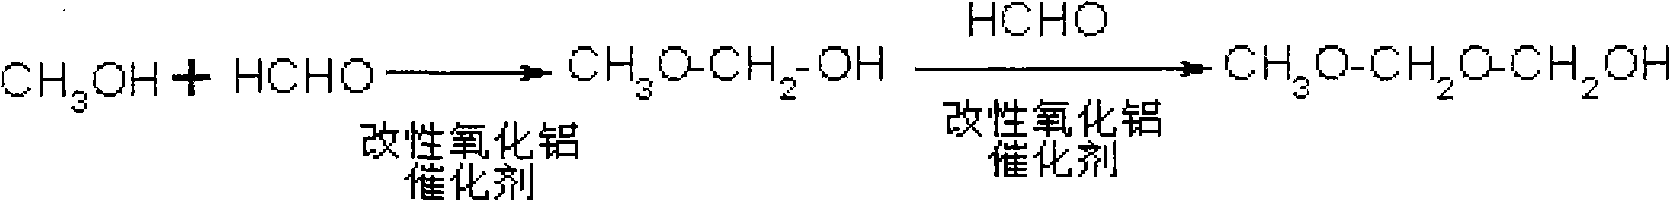 Method for synthesizing polyoxymethylene dimethyl ethers